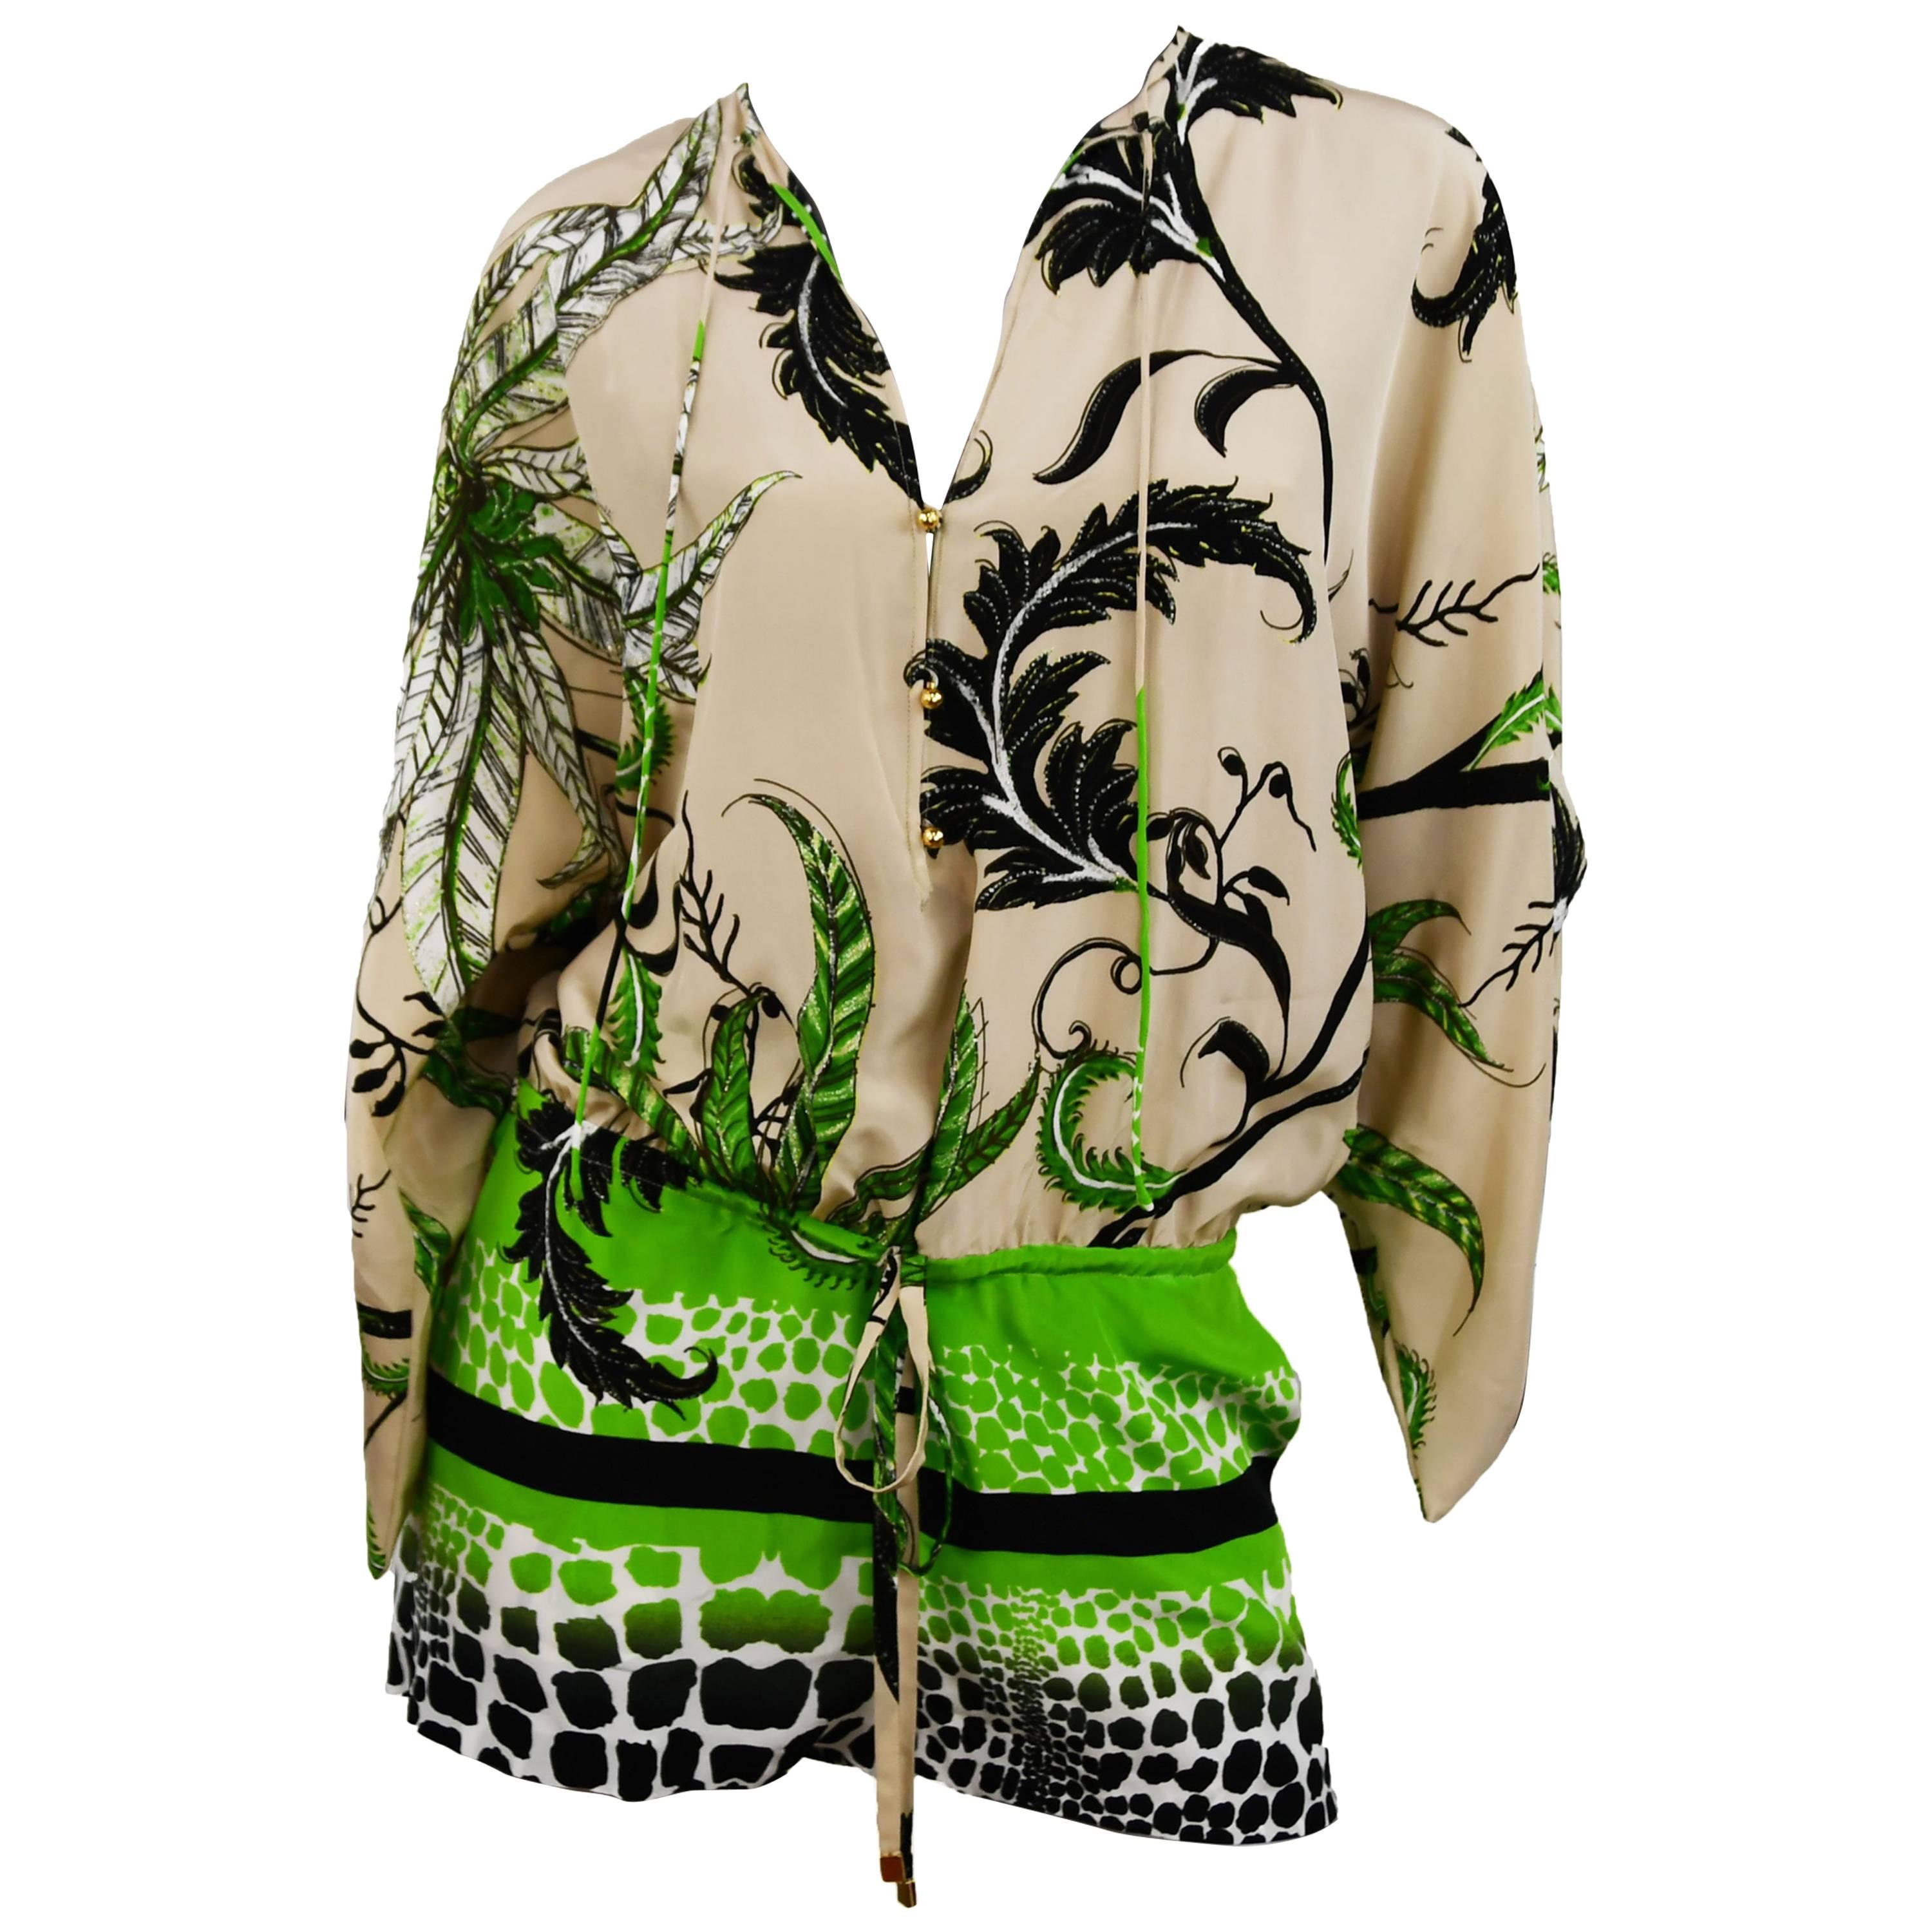 Roberto Cavalli Jungle Print Silk Chiffon Short Romper, Size 38  For Sale